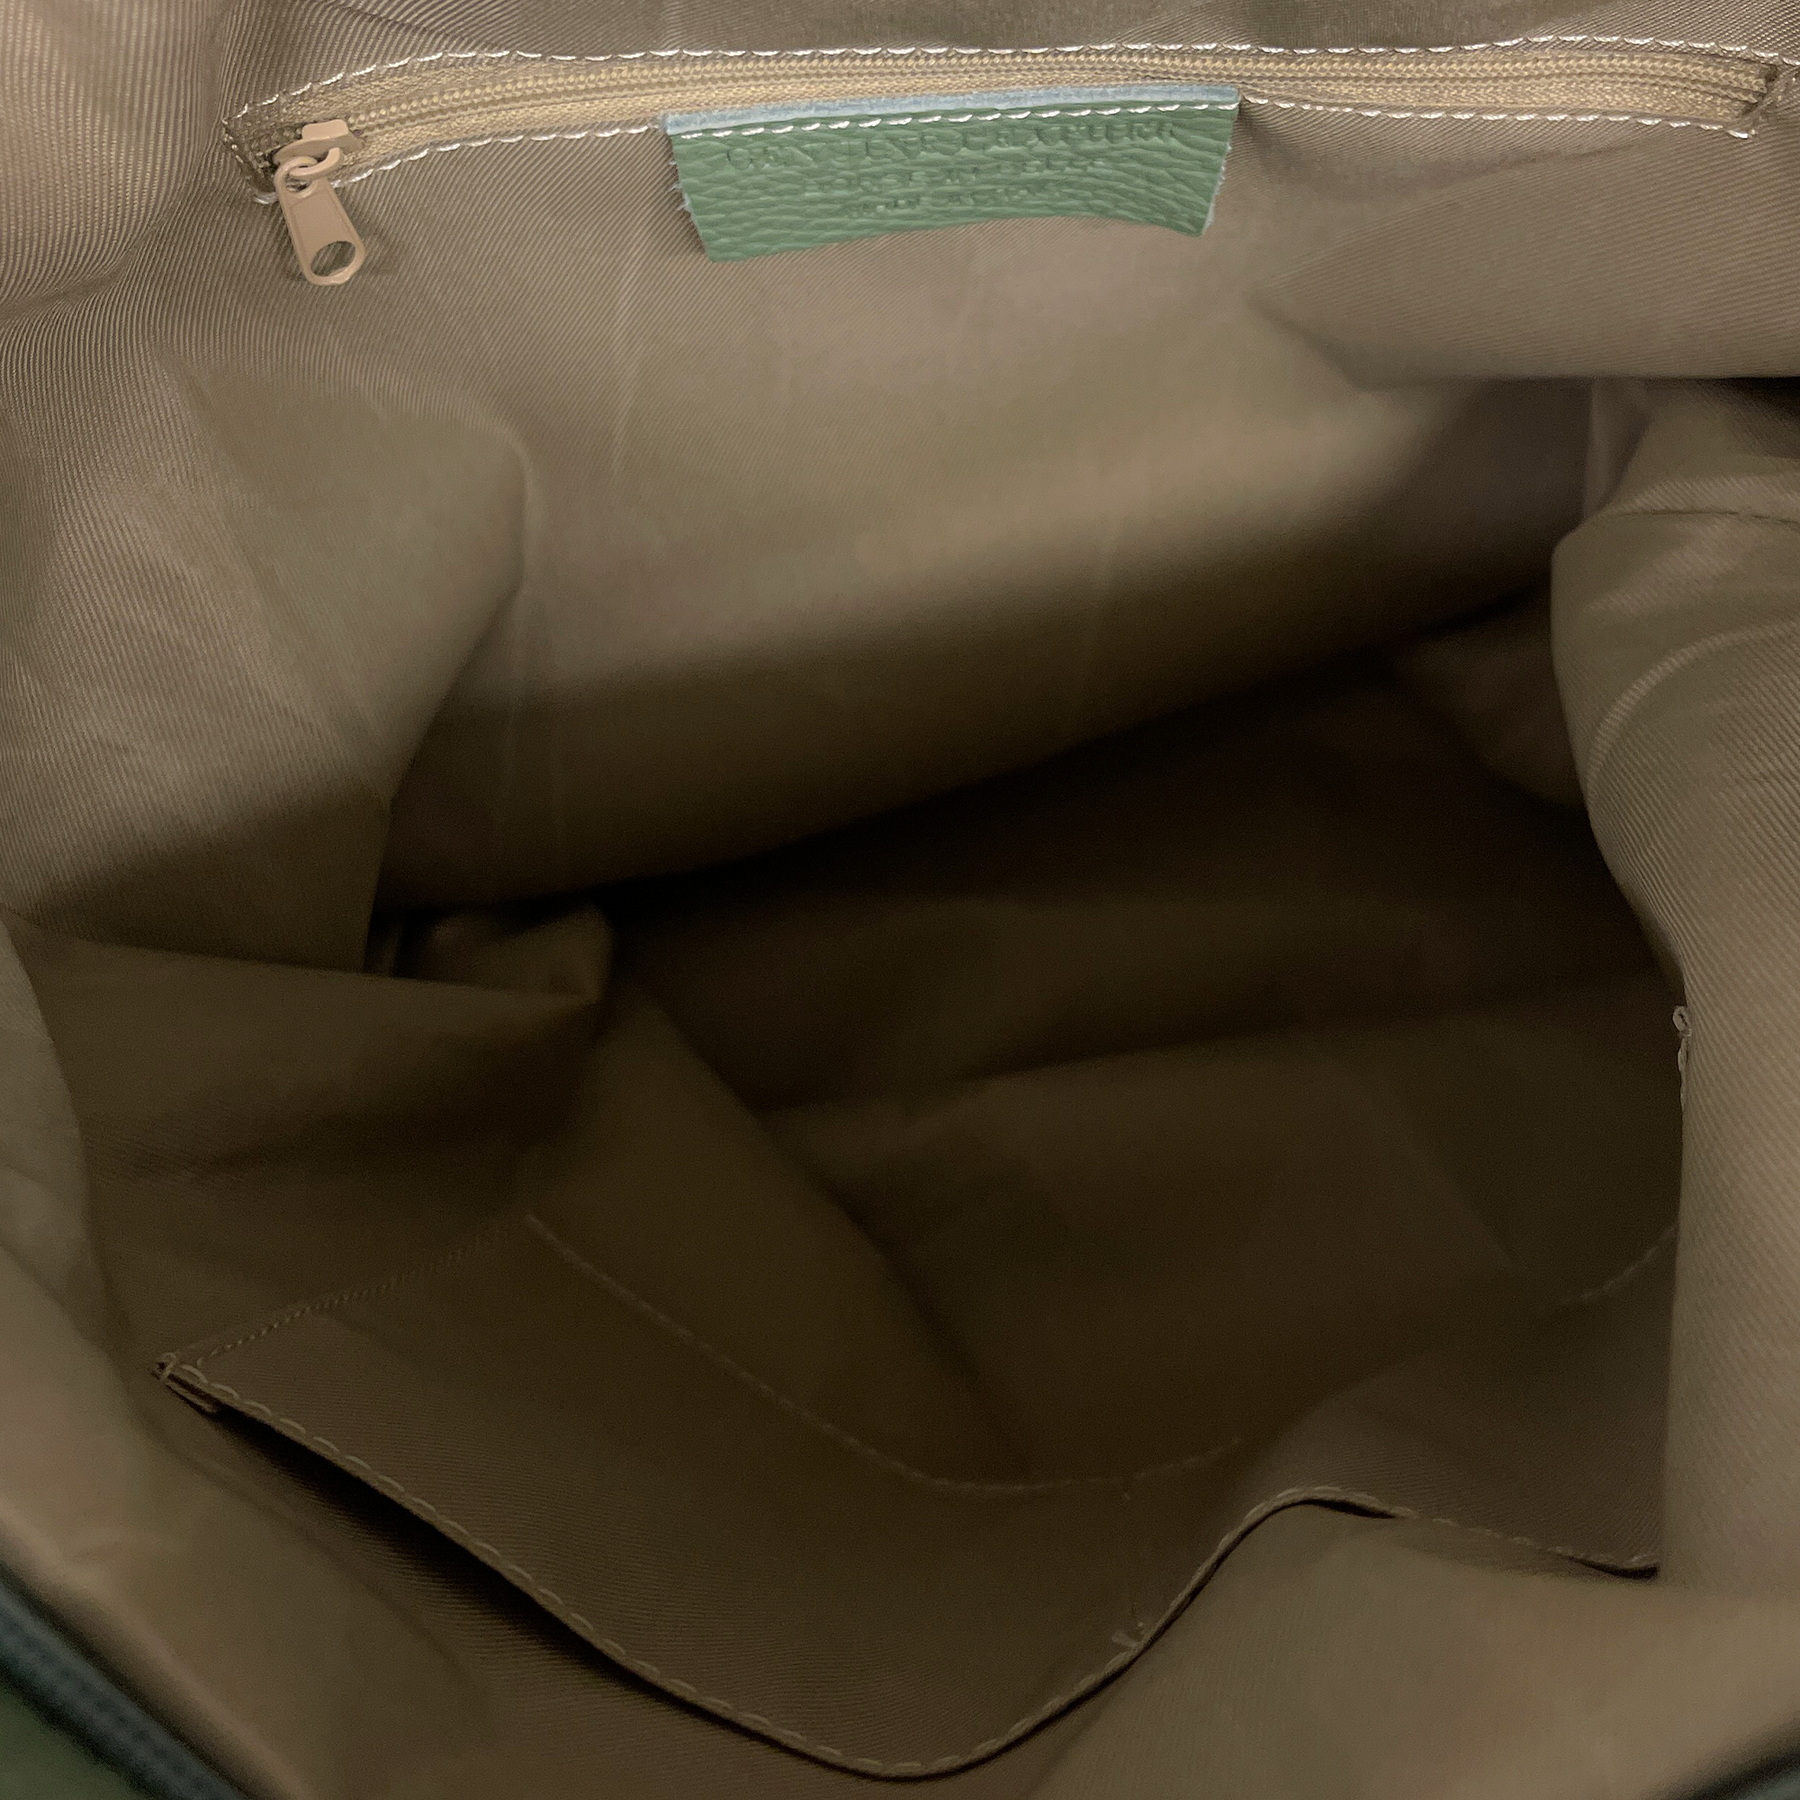 Konvertibel rygsæk i luksuslæder - Alsidig og premium finish